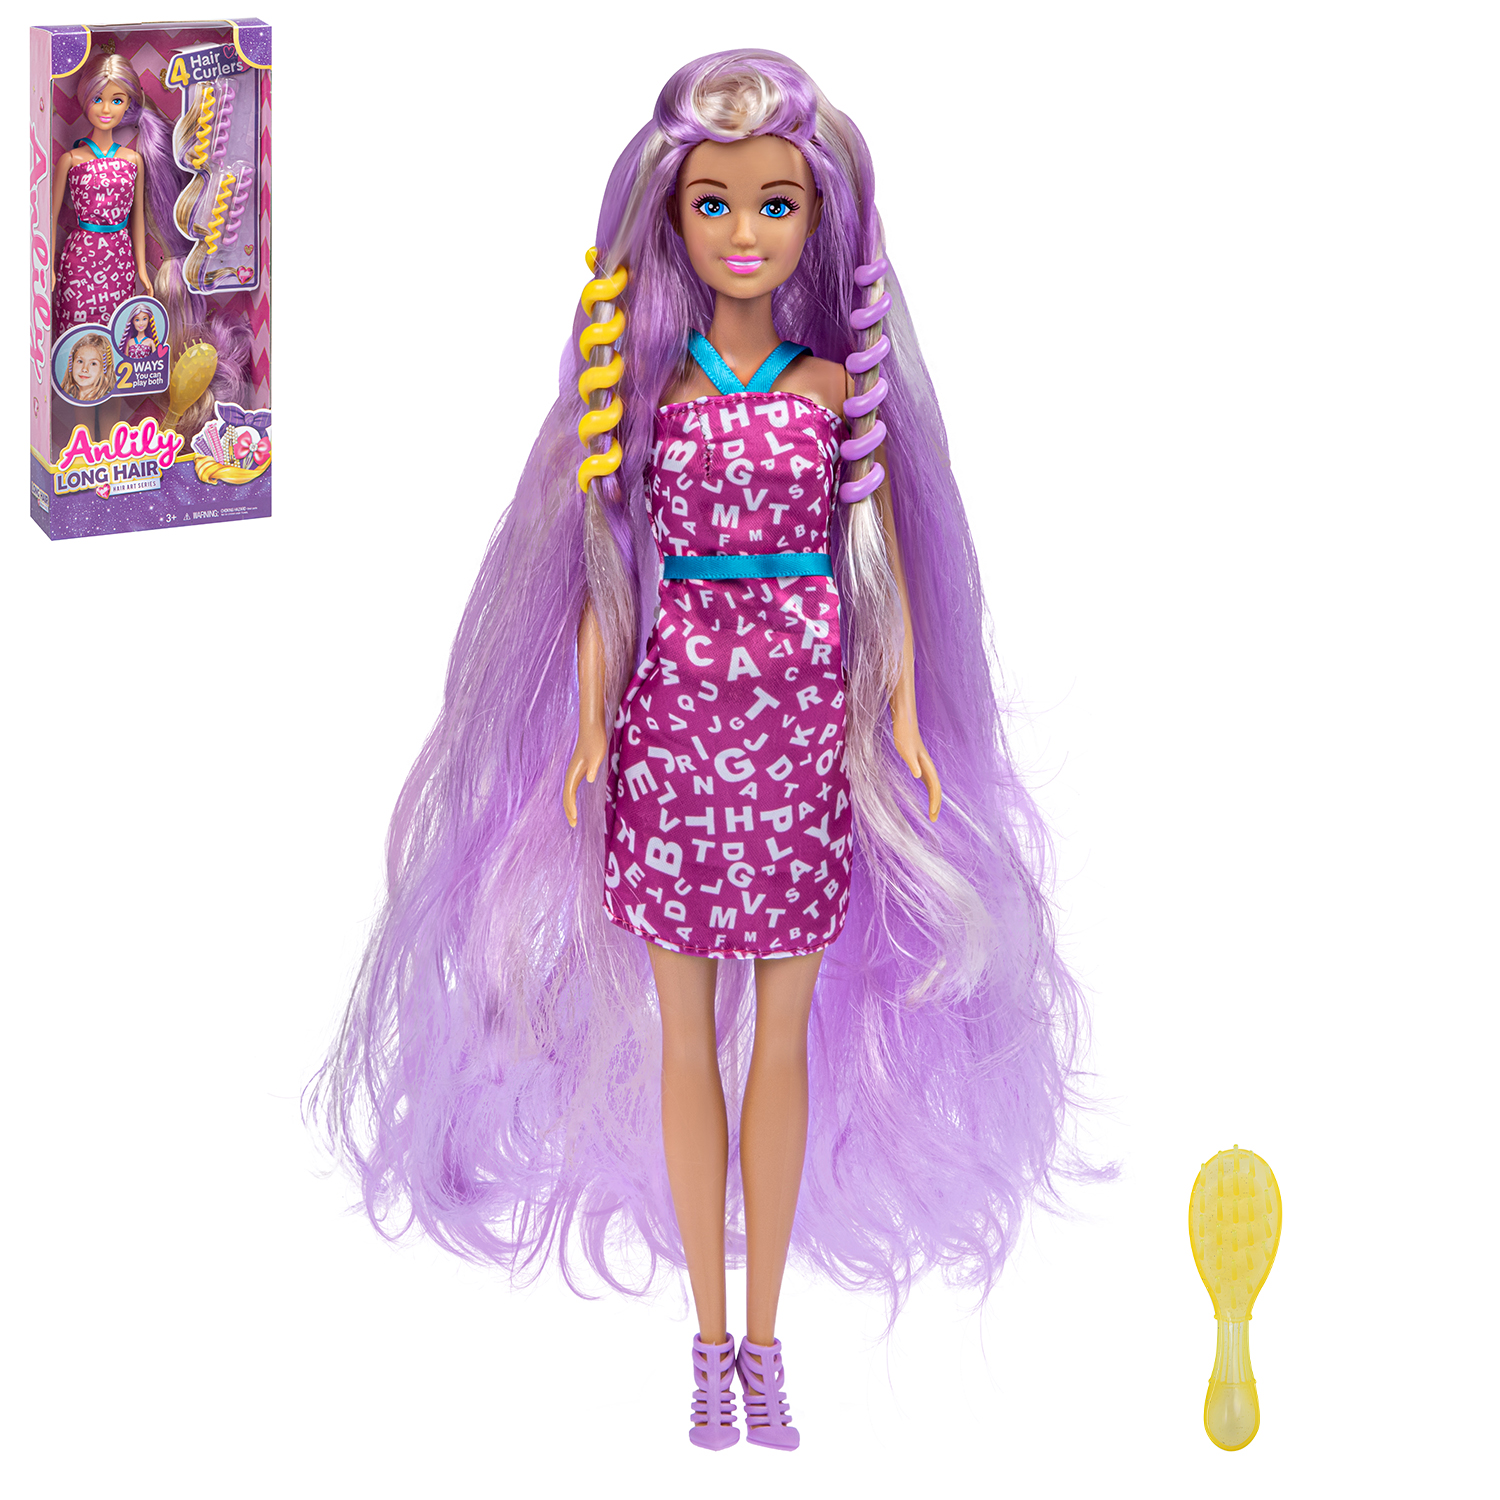 Модельная кукла Amore Bello Роскошные волосы, с аксессуарами, JB0211447